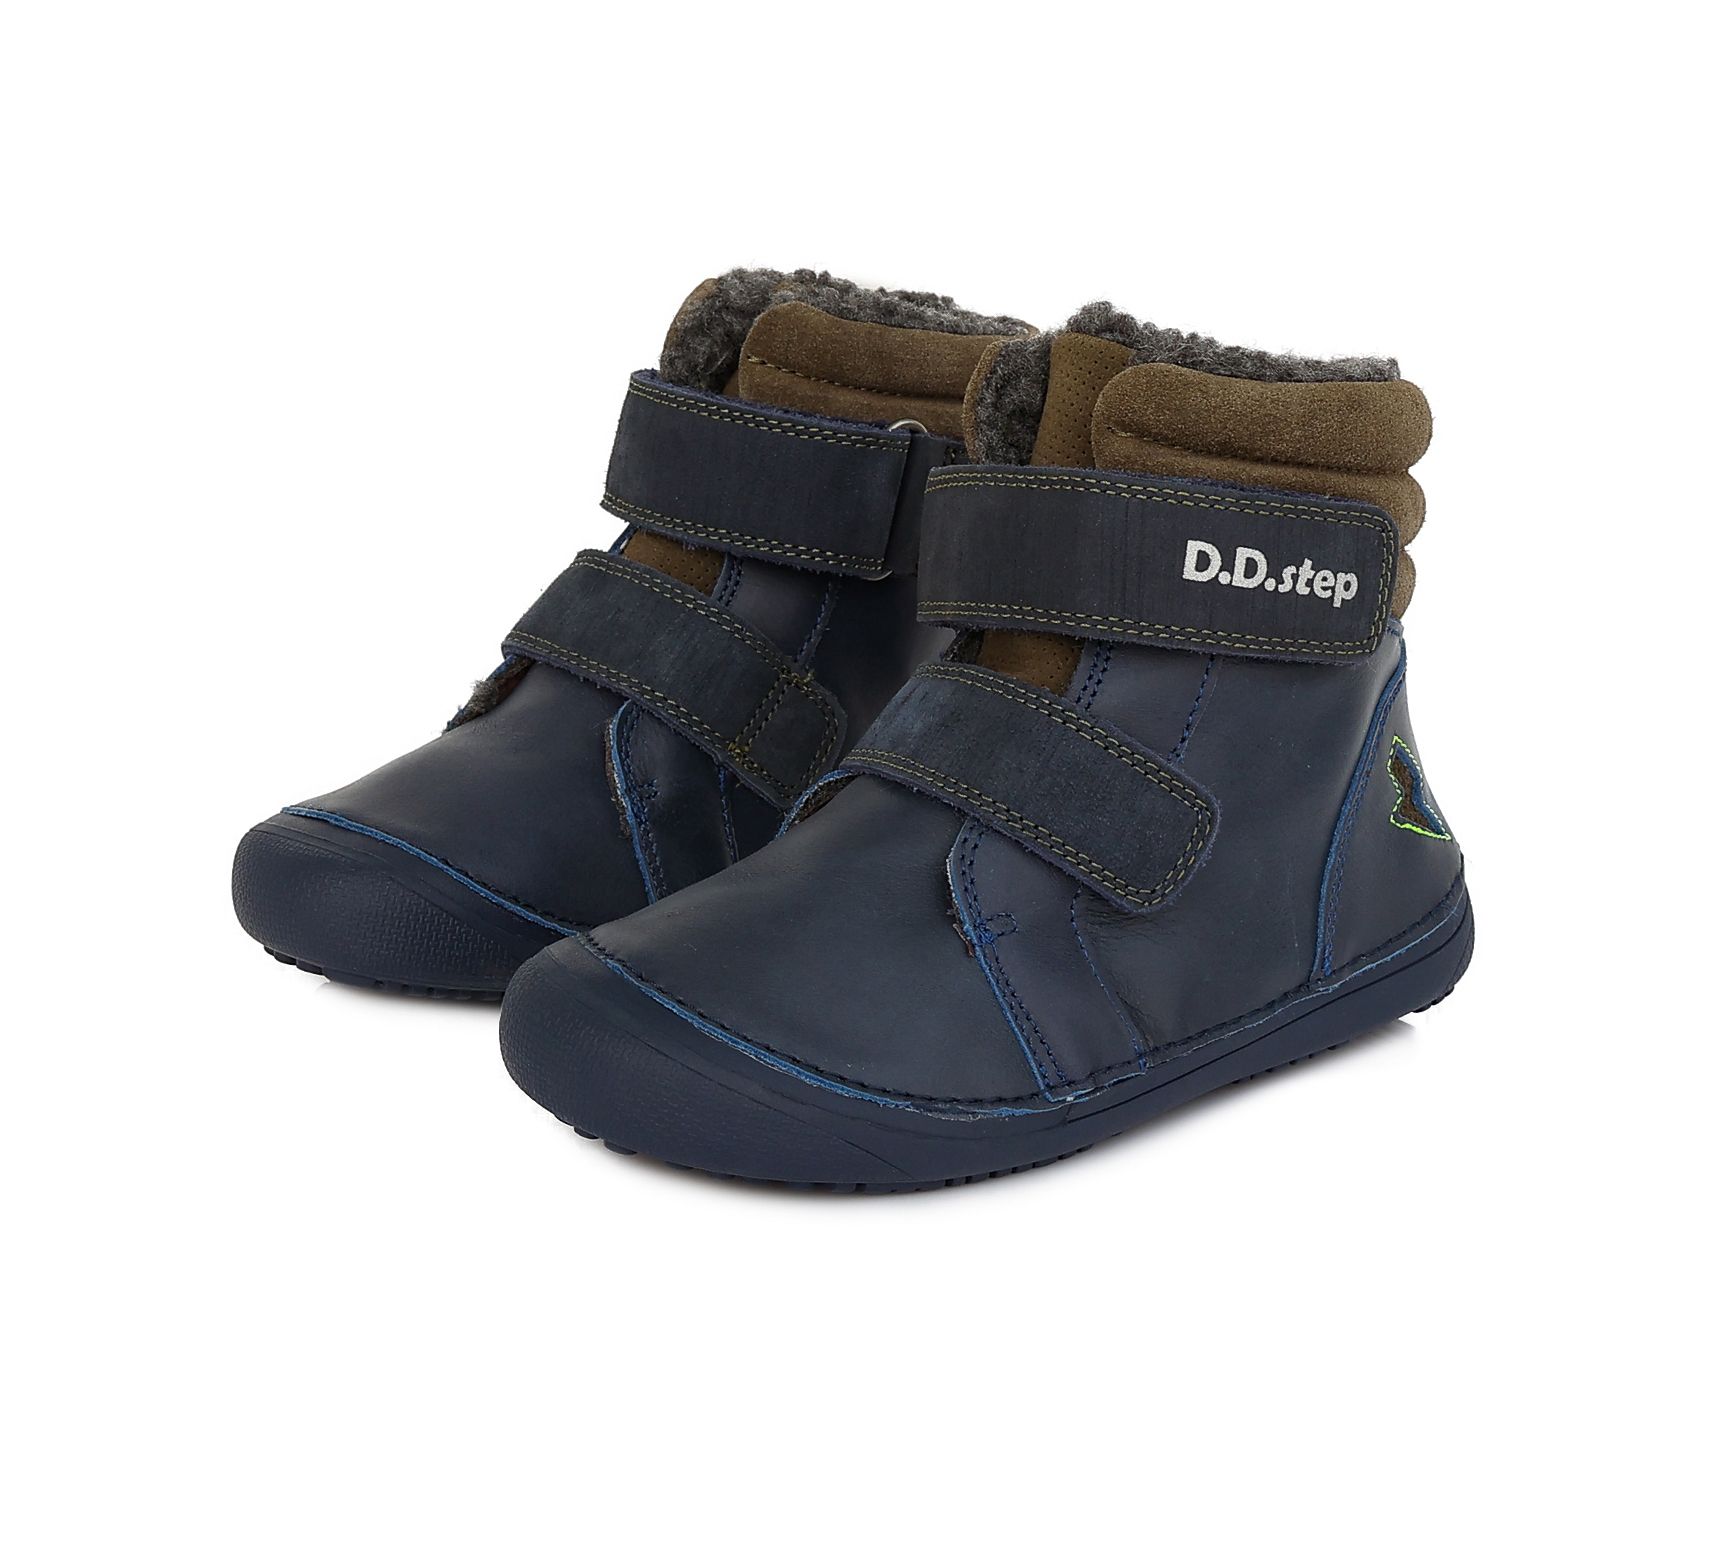 D.D.Step villavoodriga barefoot talvesaapad, Red D.D.Step - HellyK - Kvaliteetsed lasteriided, villariided, barefoot jalatsid